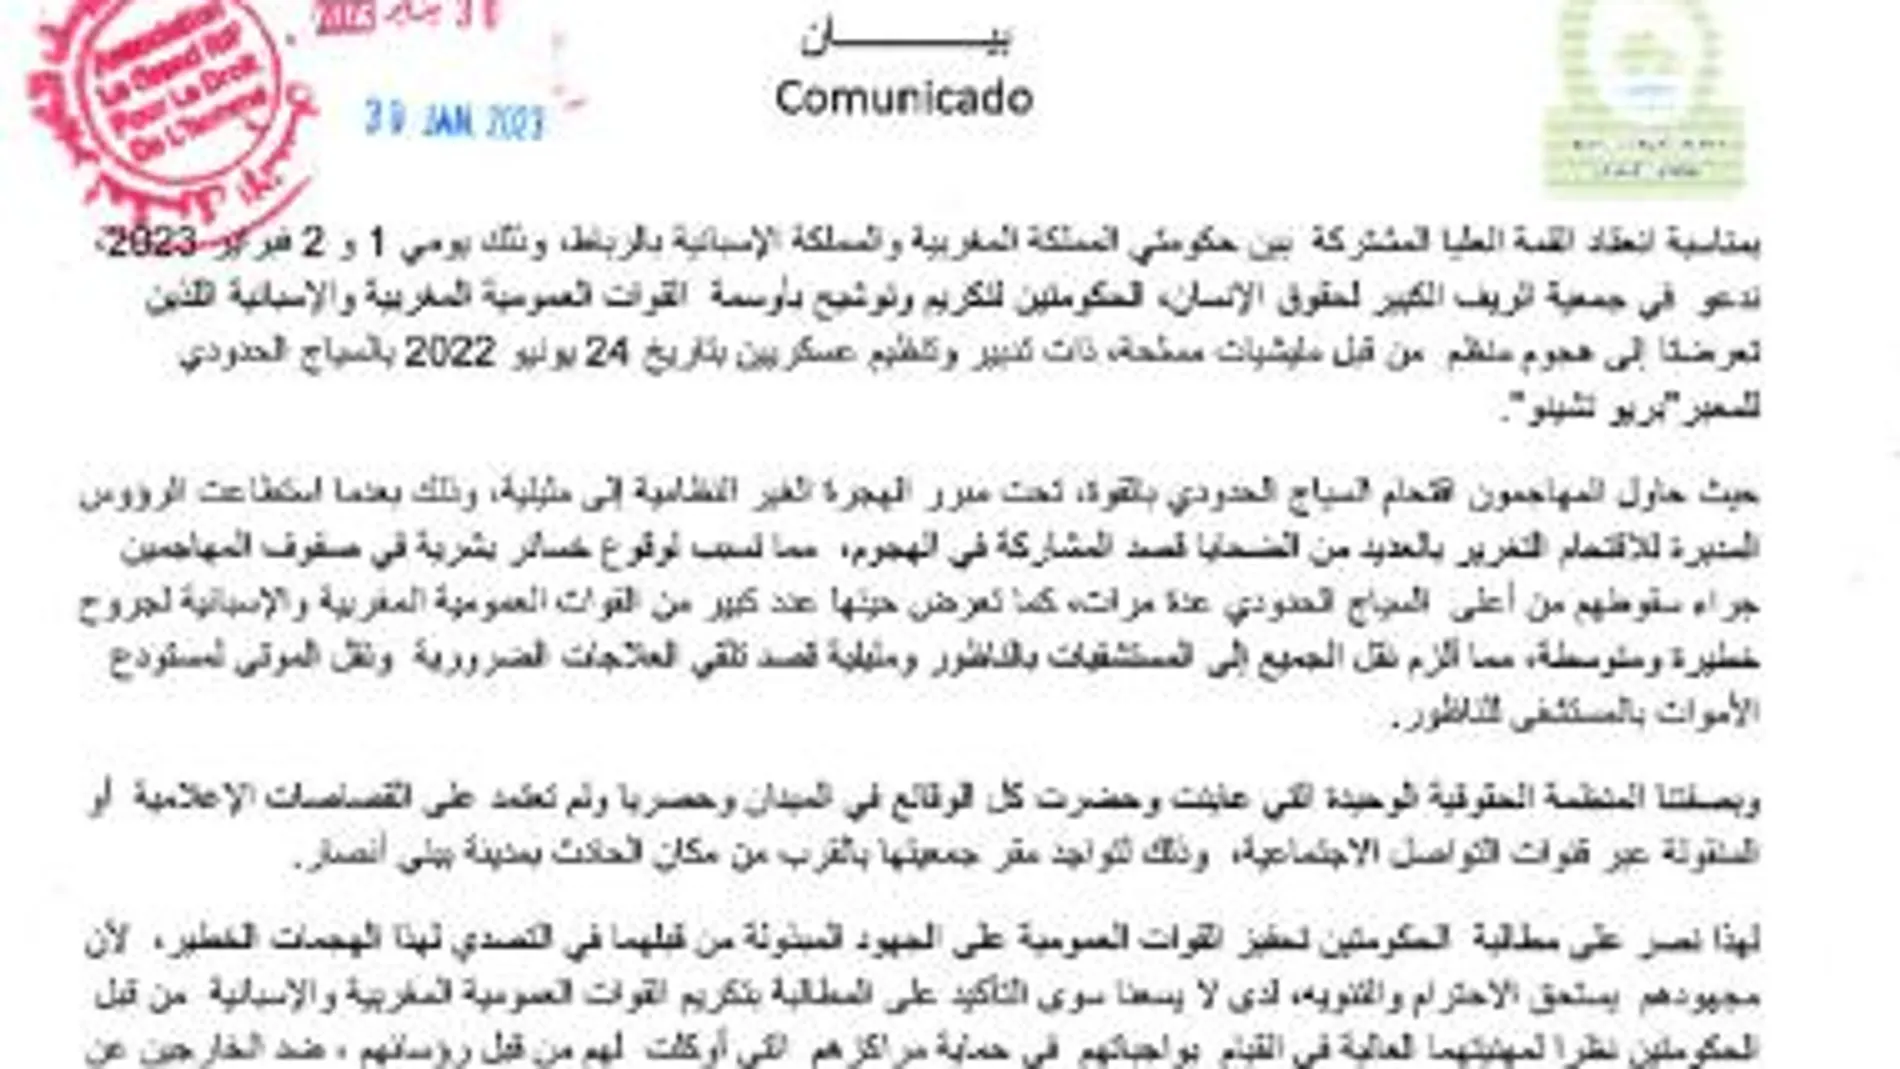 Comunicado en árabe de la asociación marroquí